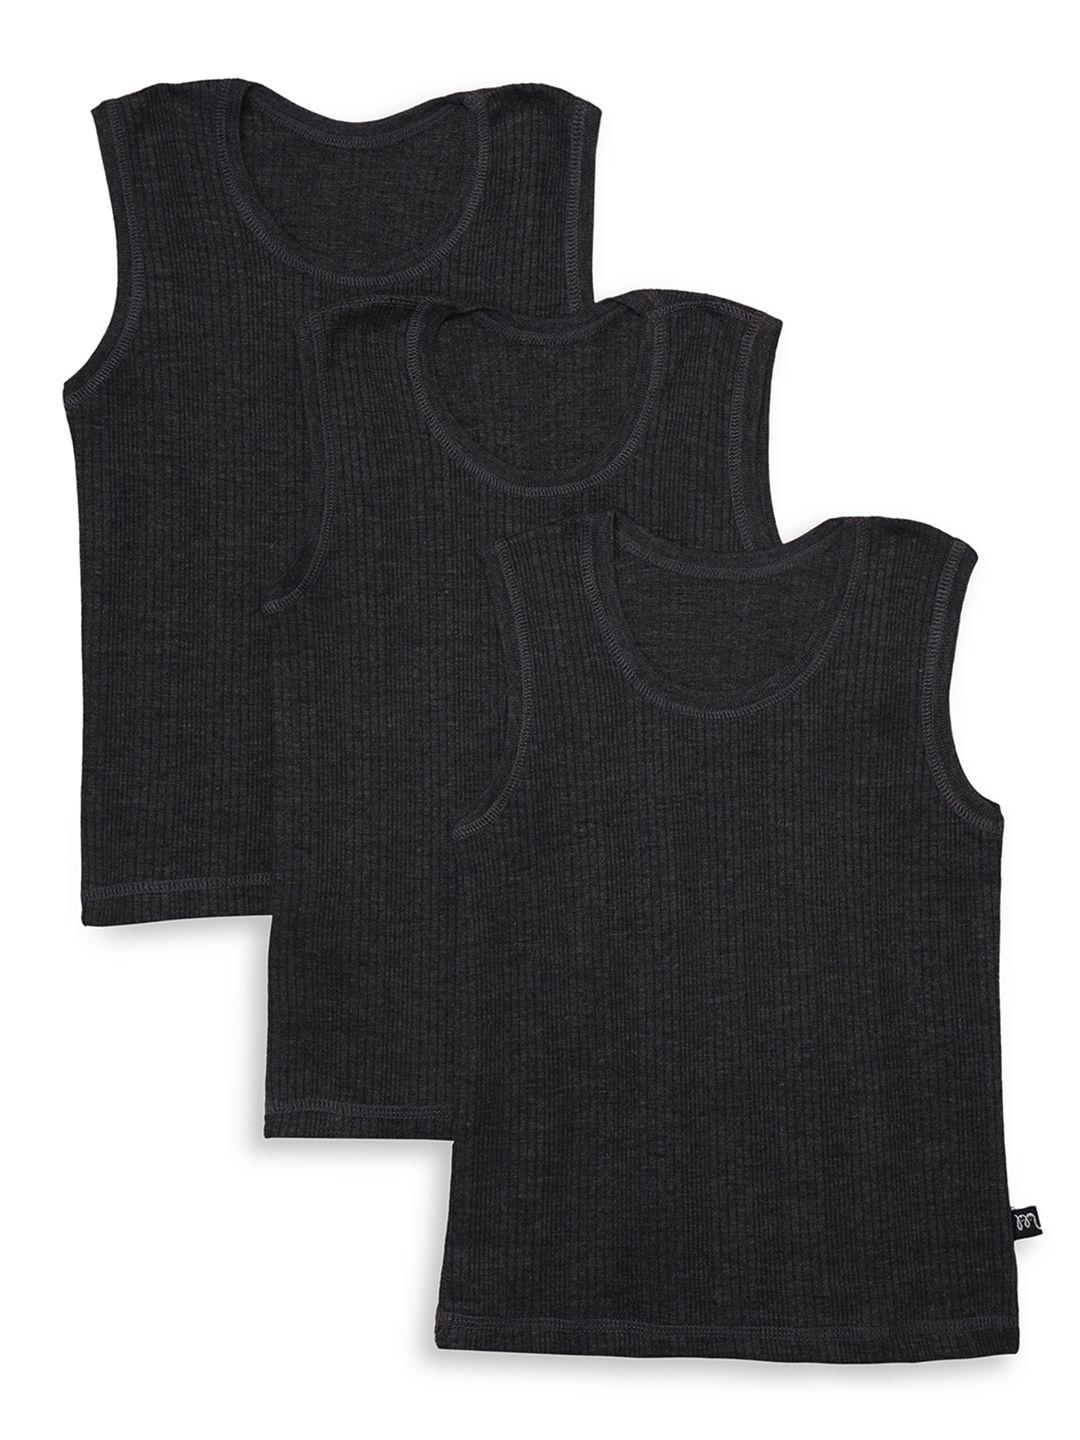 yk unisex kids pack of 3 black self-design thermal tops